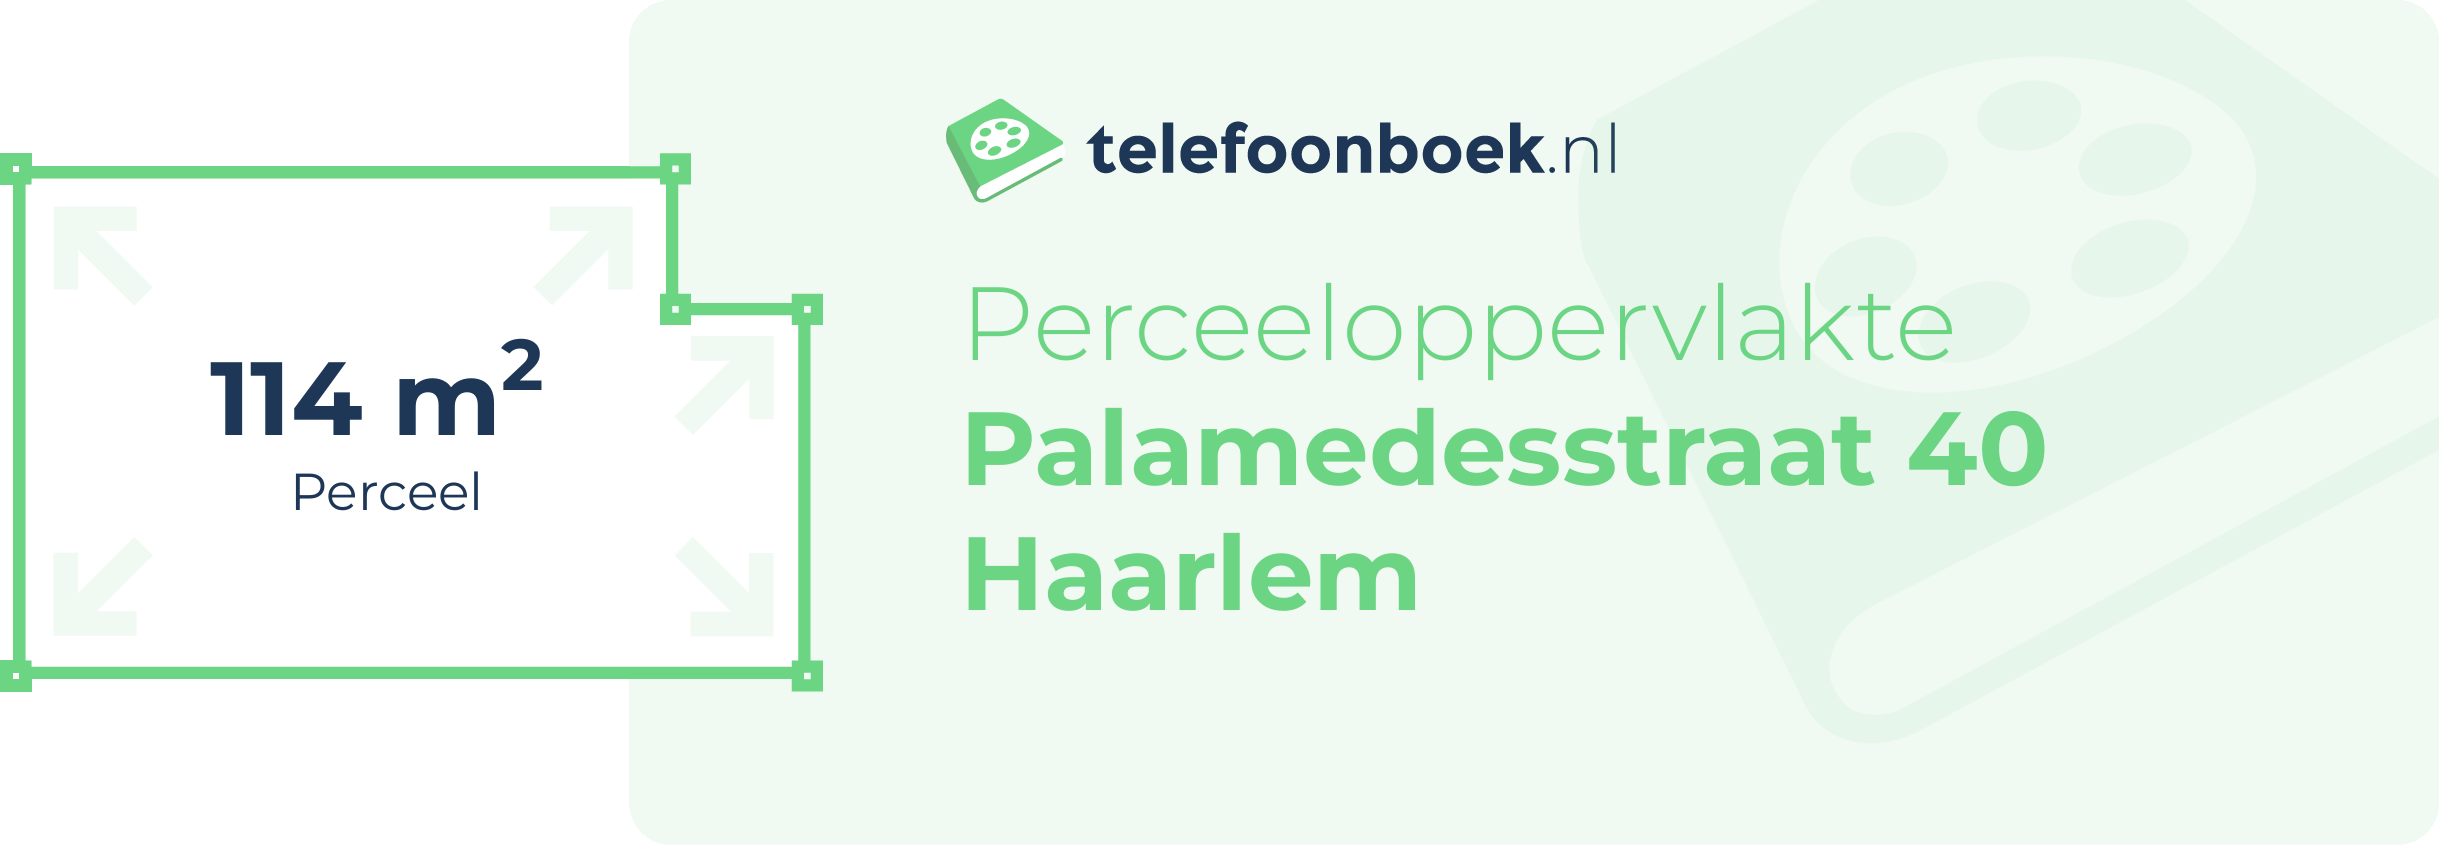 Perceeloppervlakte Palamedesstraat 40 Haarlem